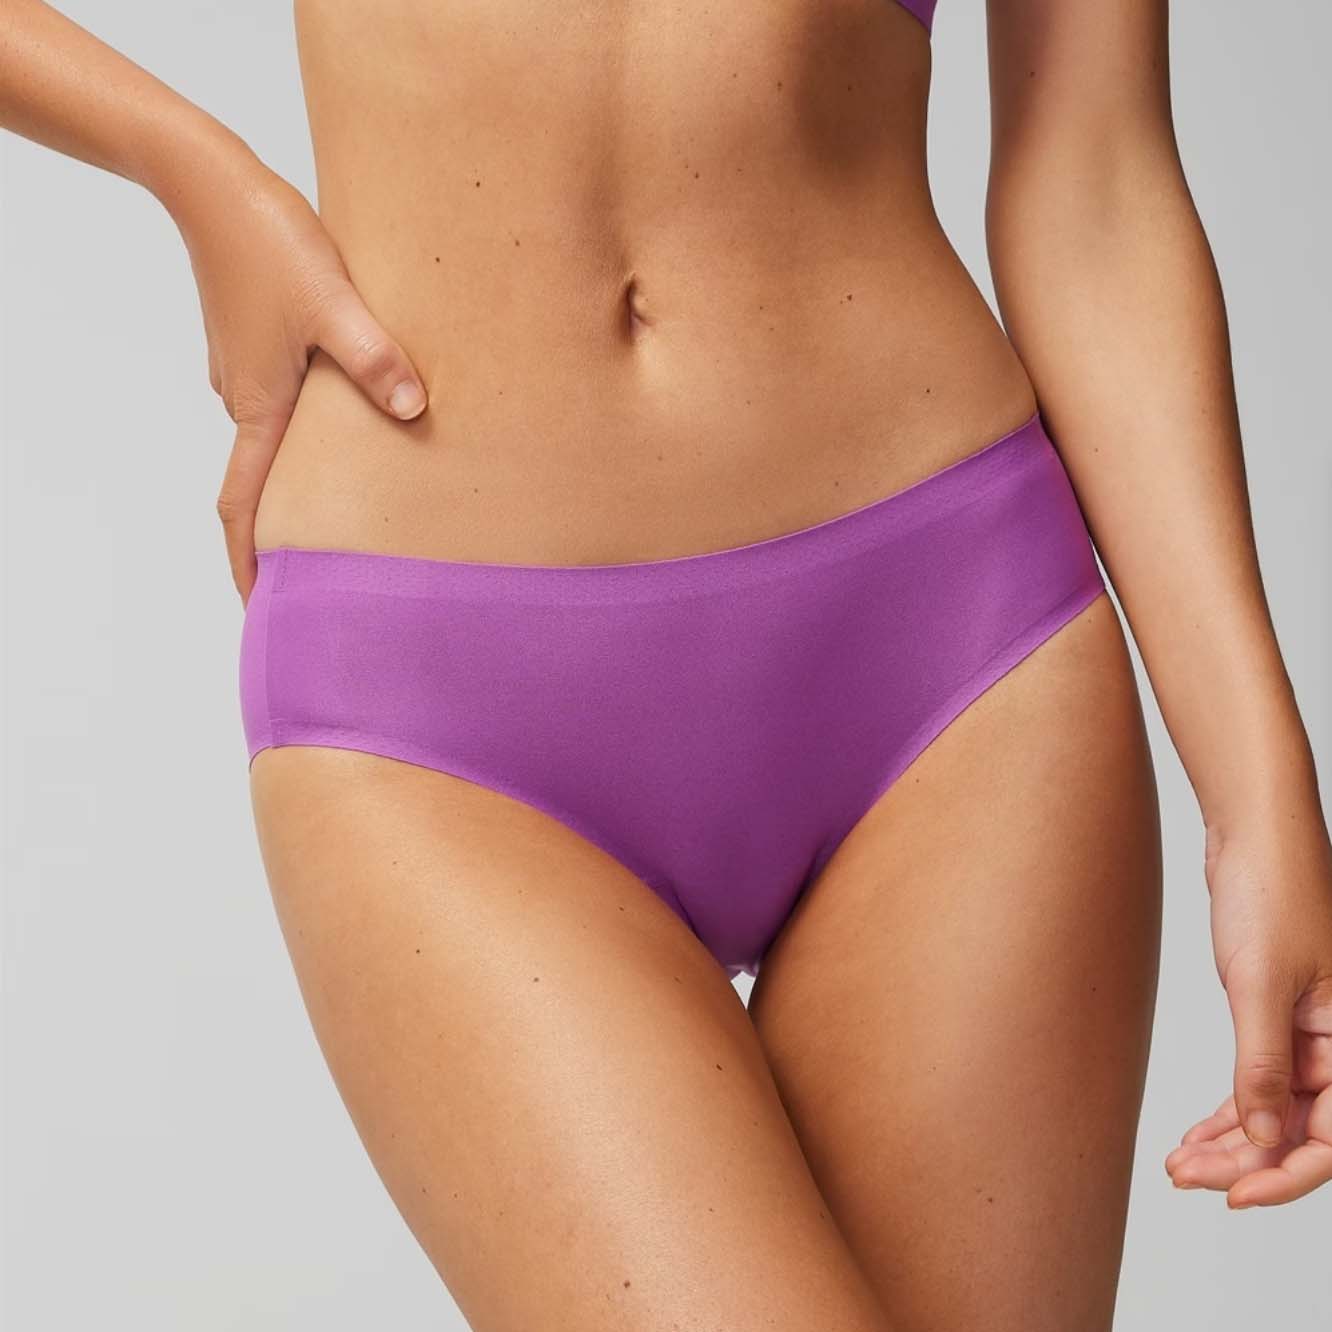 Woman wearing purple underwear